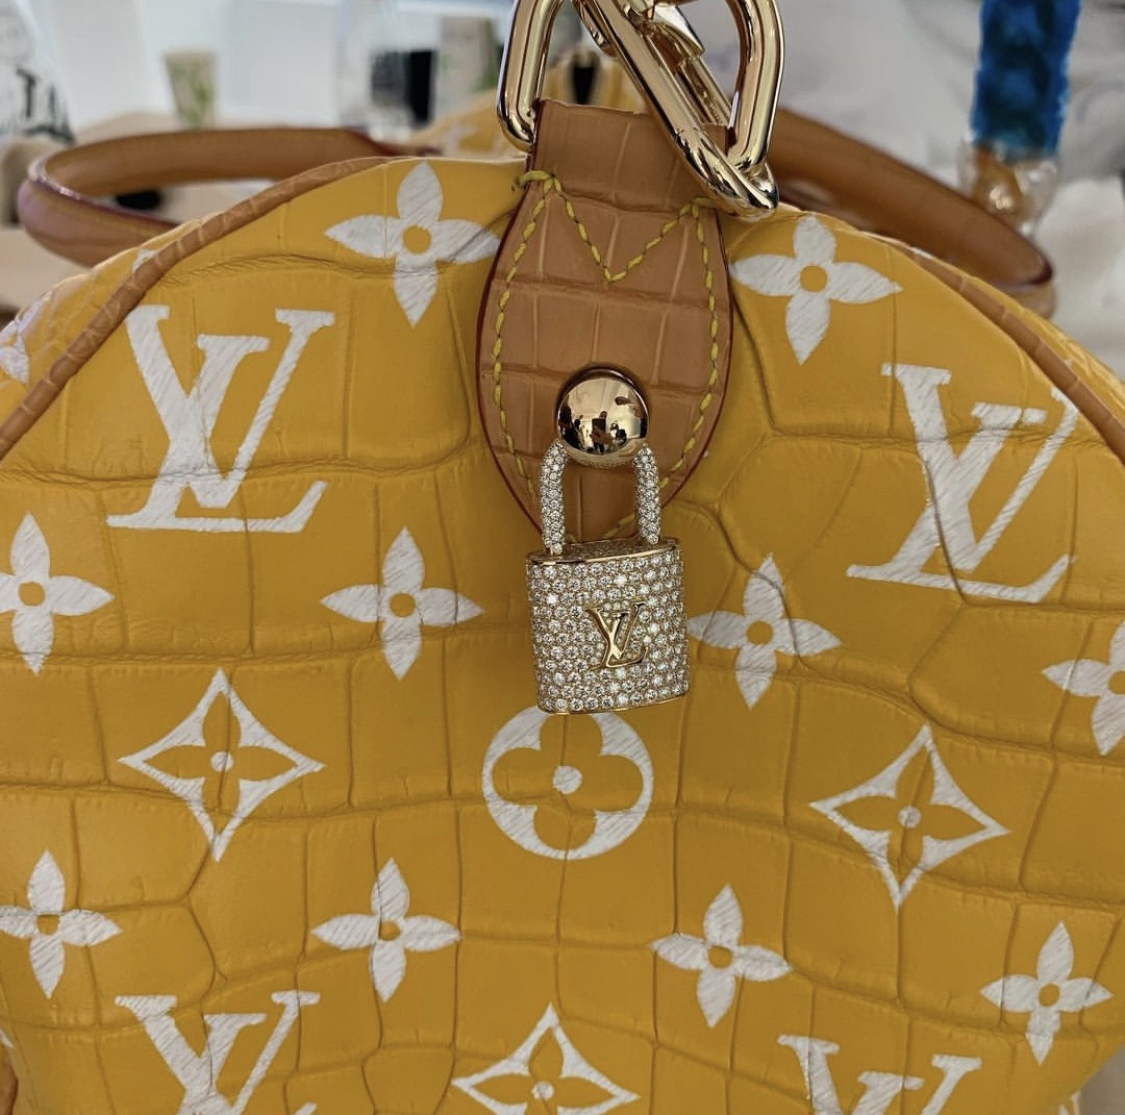 LV Most expensive bag ever? Millionaire Speedy! 🤯 #lvbag #lvcollection  #pharrelwilliams #lvpharrell 